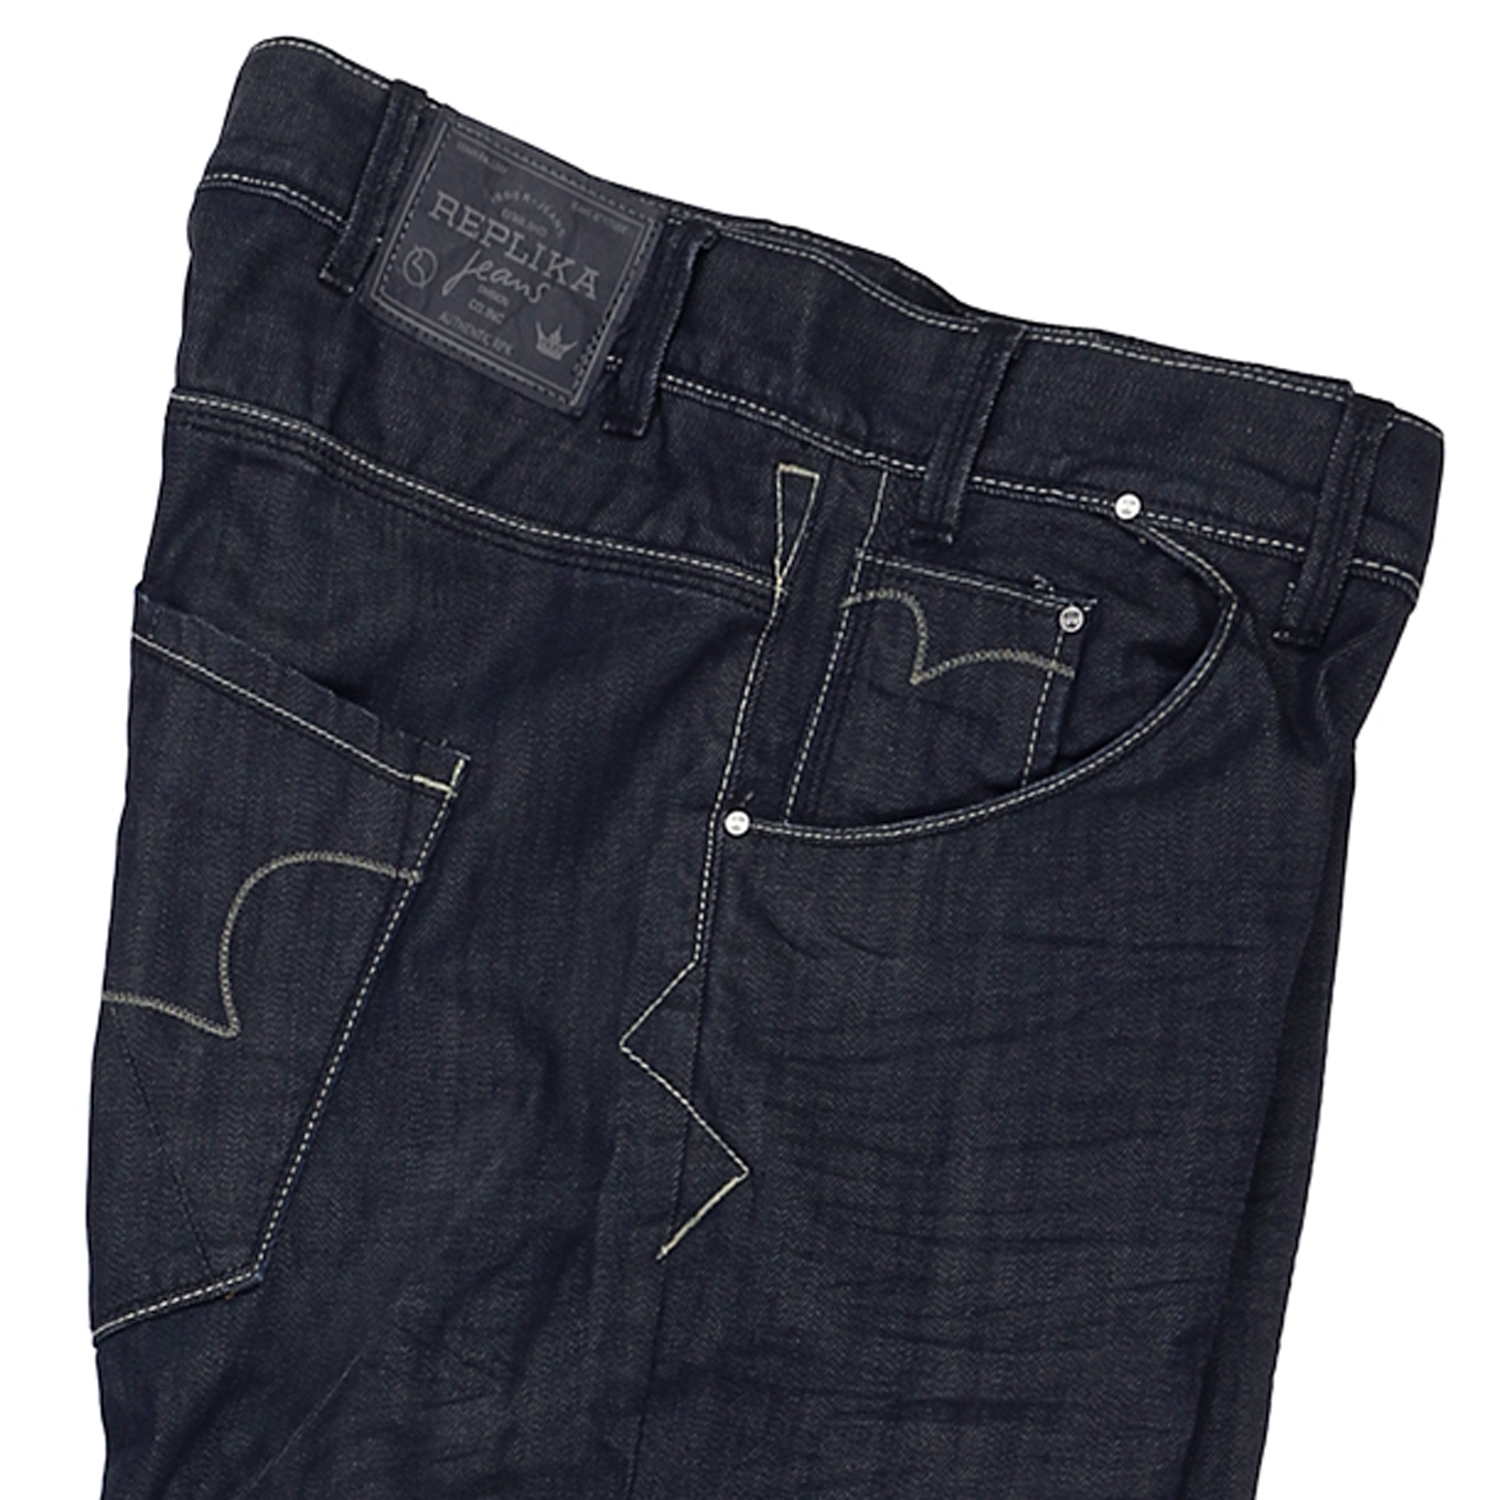 Dunkelblaue Jeans von Replika - in Übergrößen